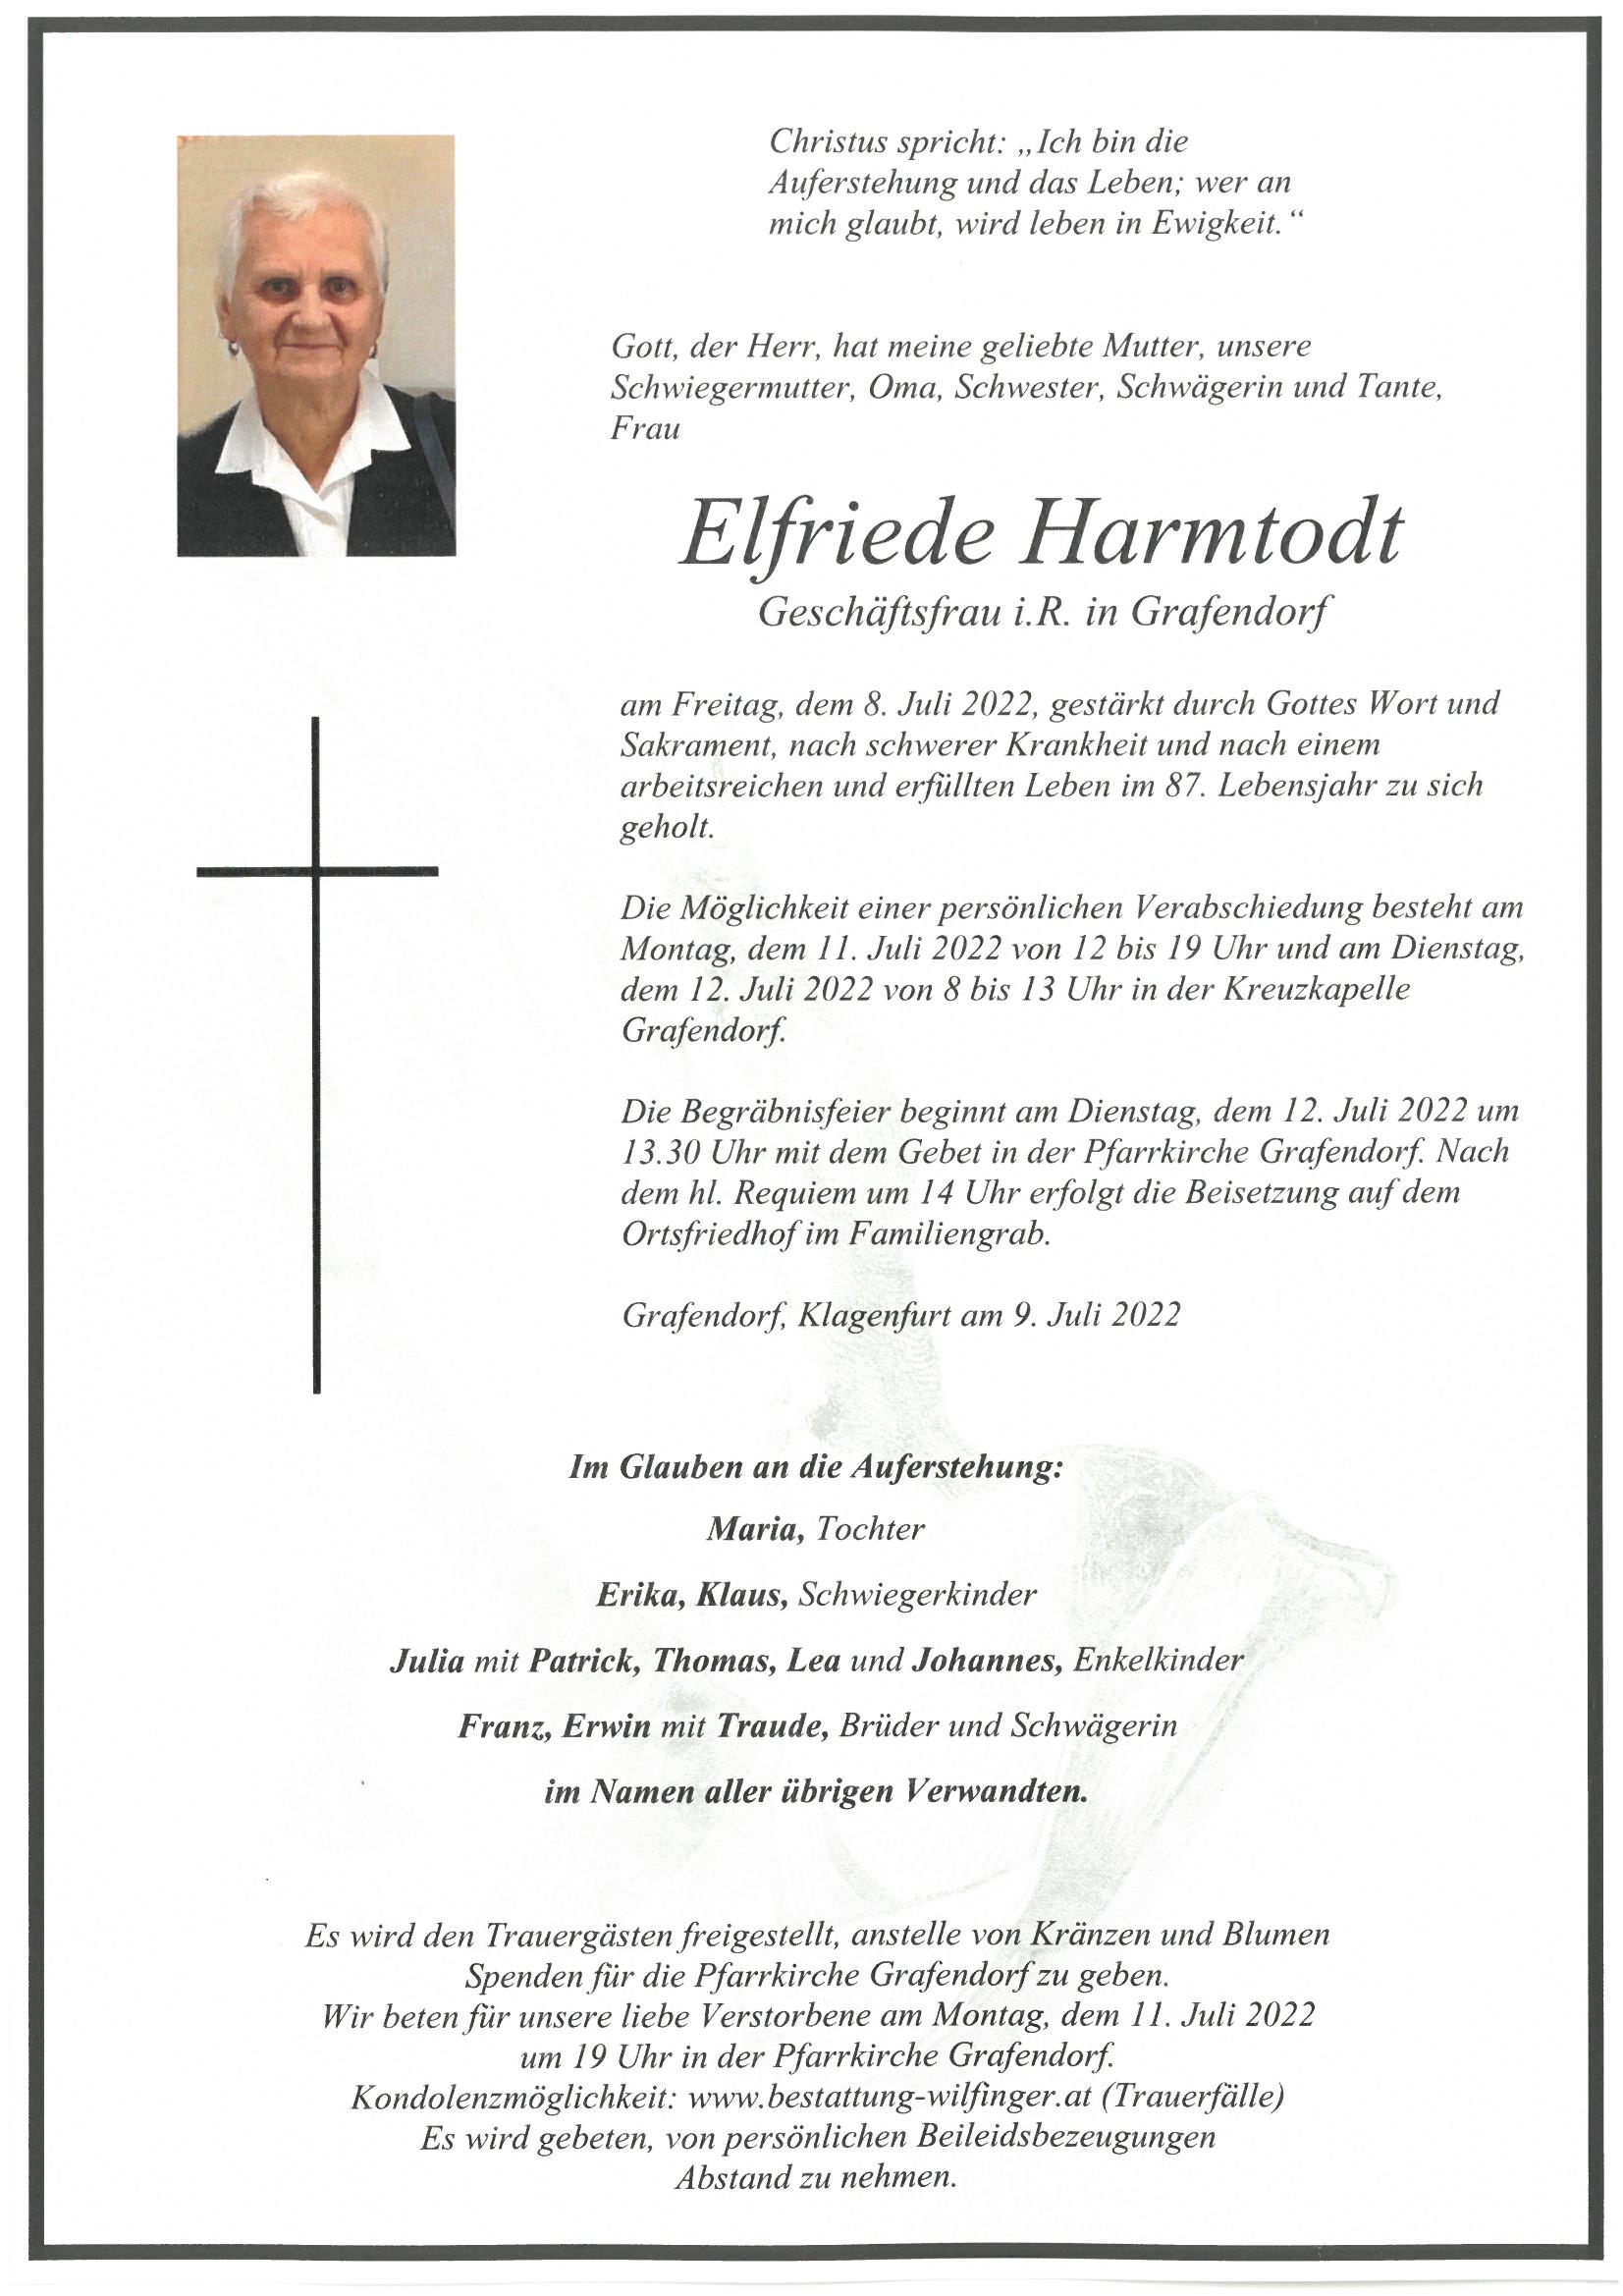 Elfriede Harmtodt, Grafendorf